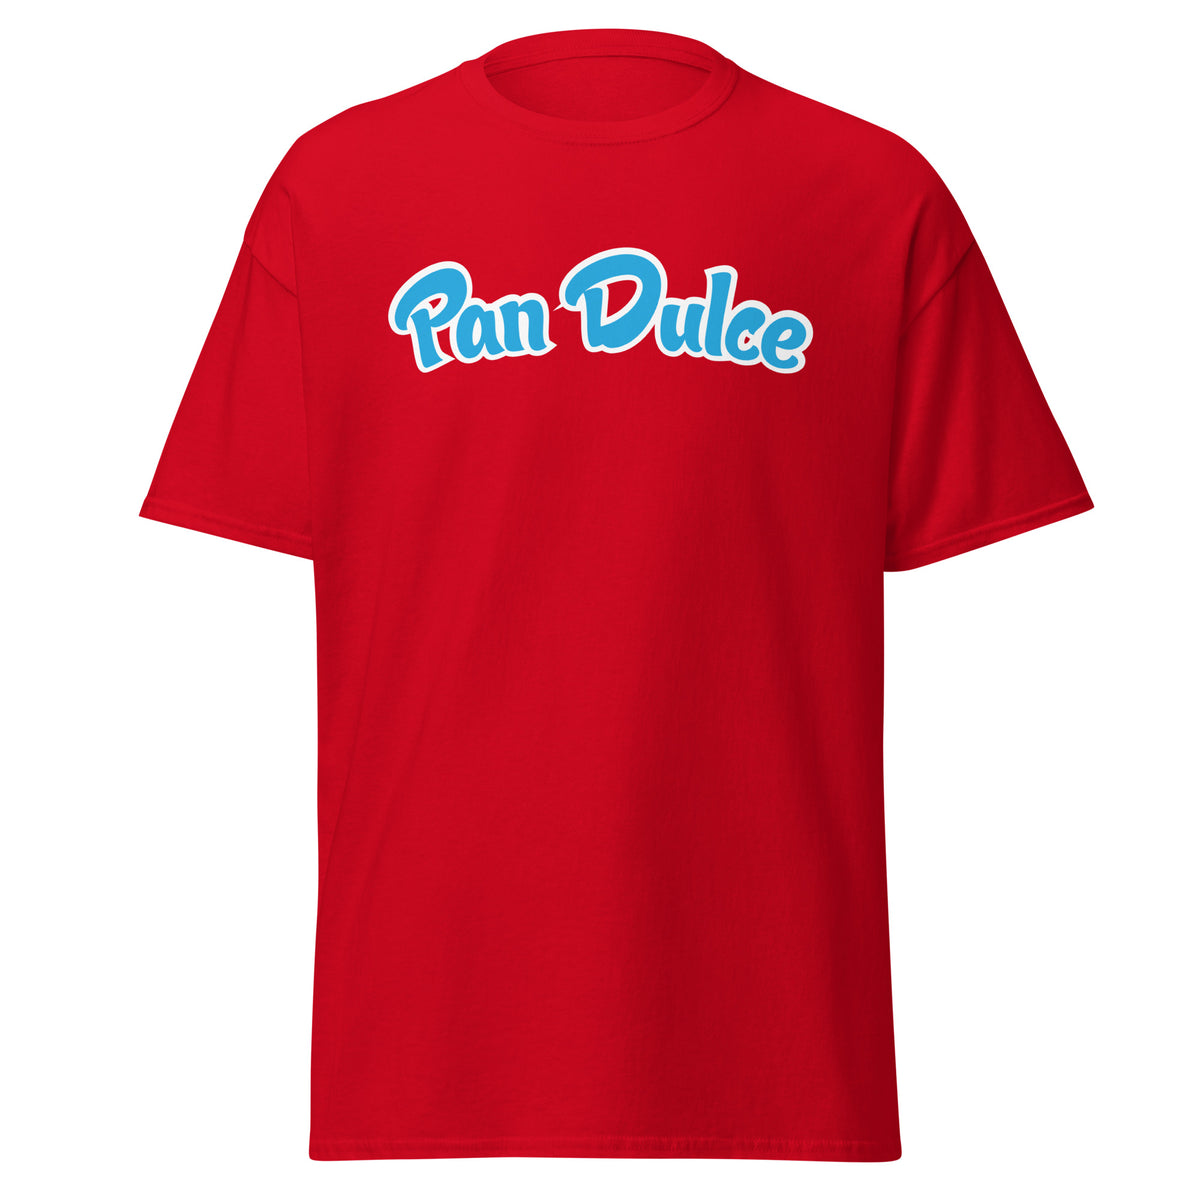 Camiseta Pan Dulce